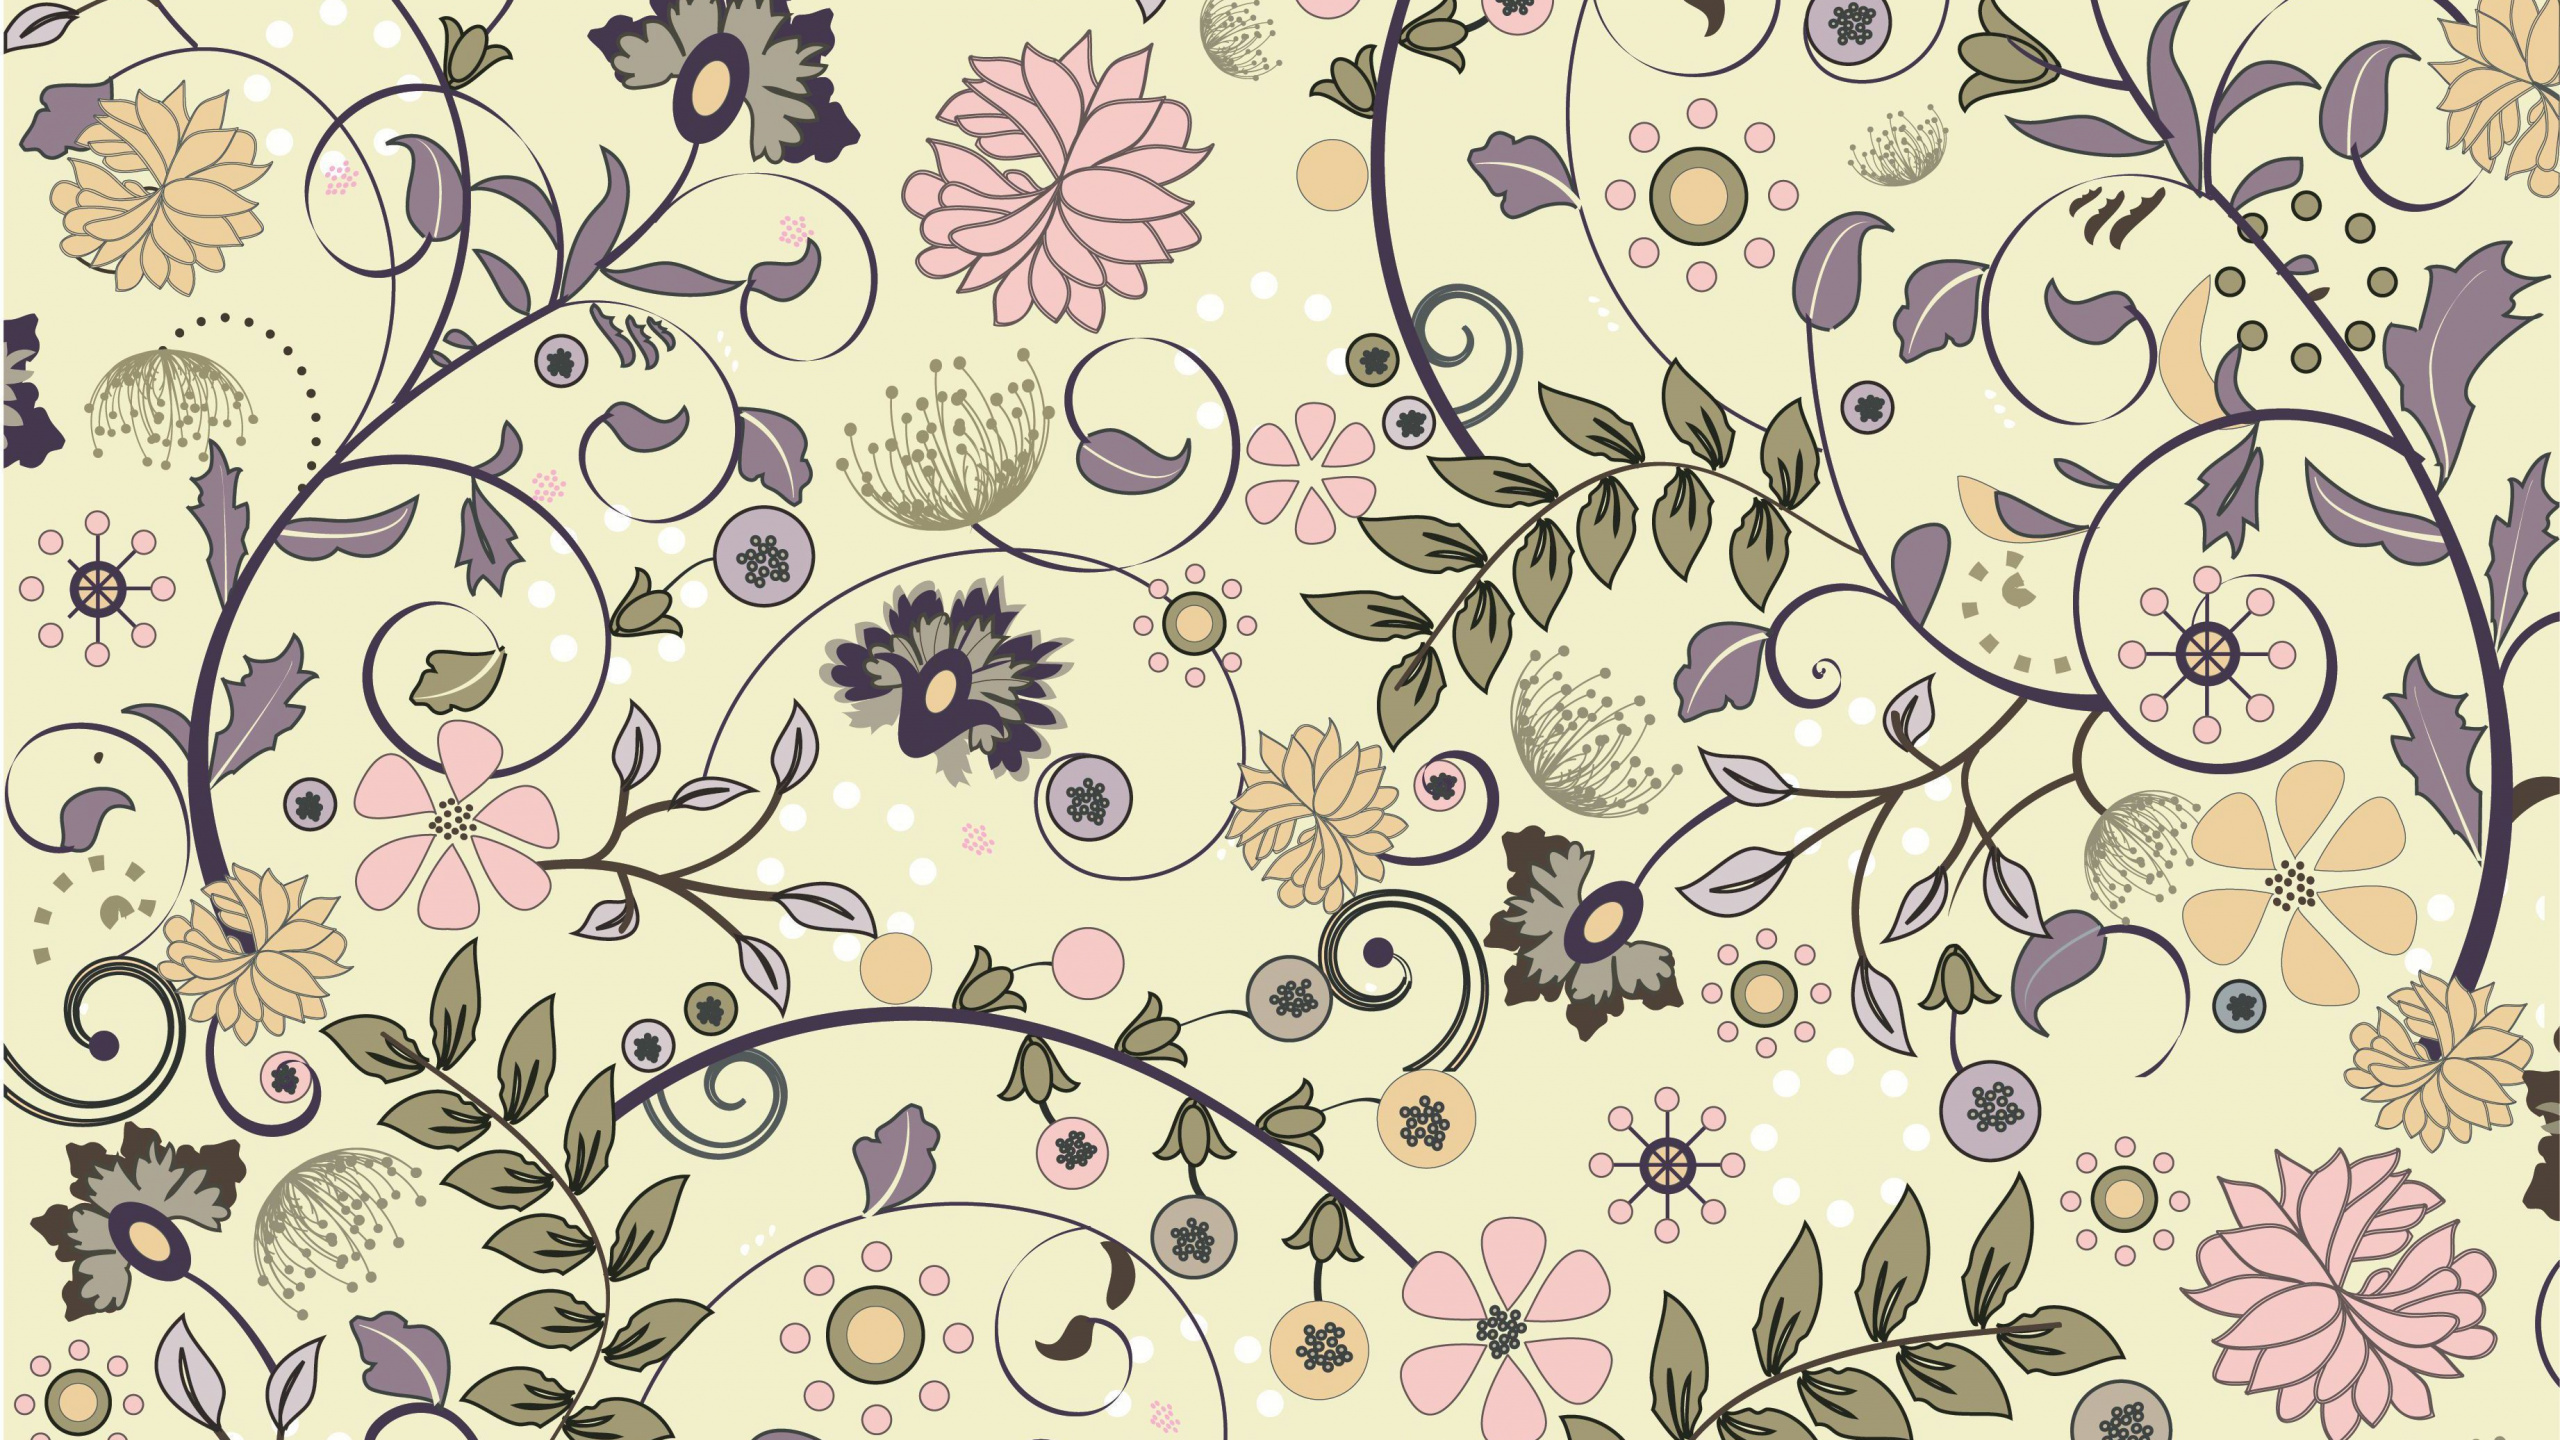 剪贴画的, 矢量图形, 花卉设计, 淡紫色的, 花安排 壁纸 2560x1440 允许